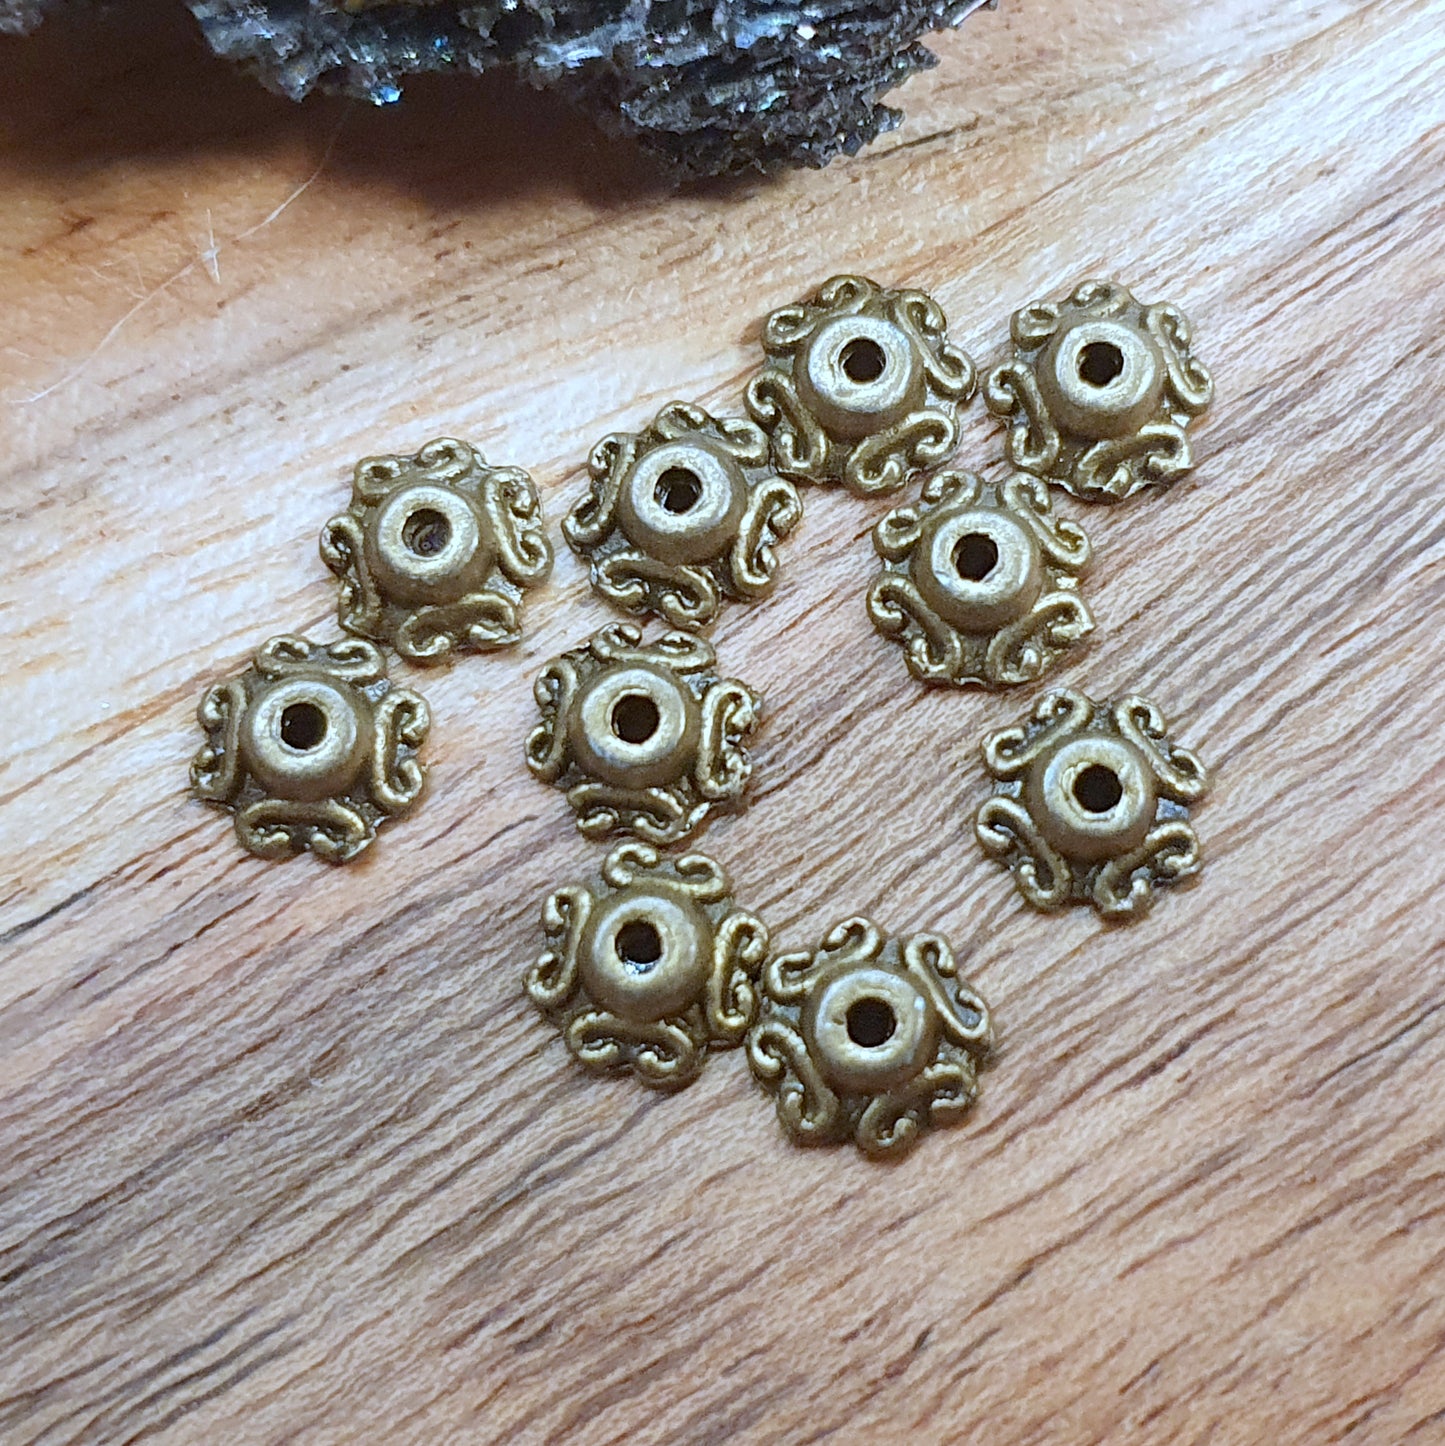 20 kleine Perlenkappen 7mm, antik bronzefarbig